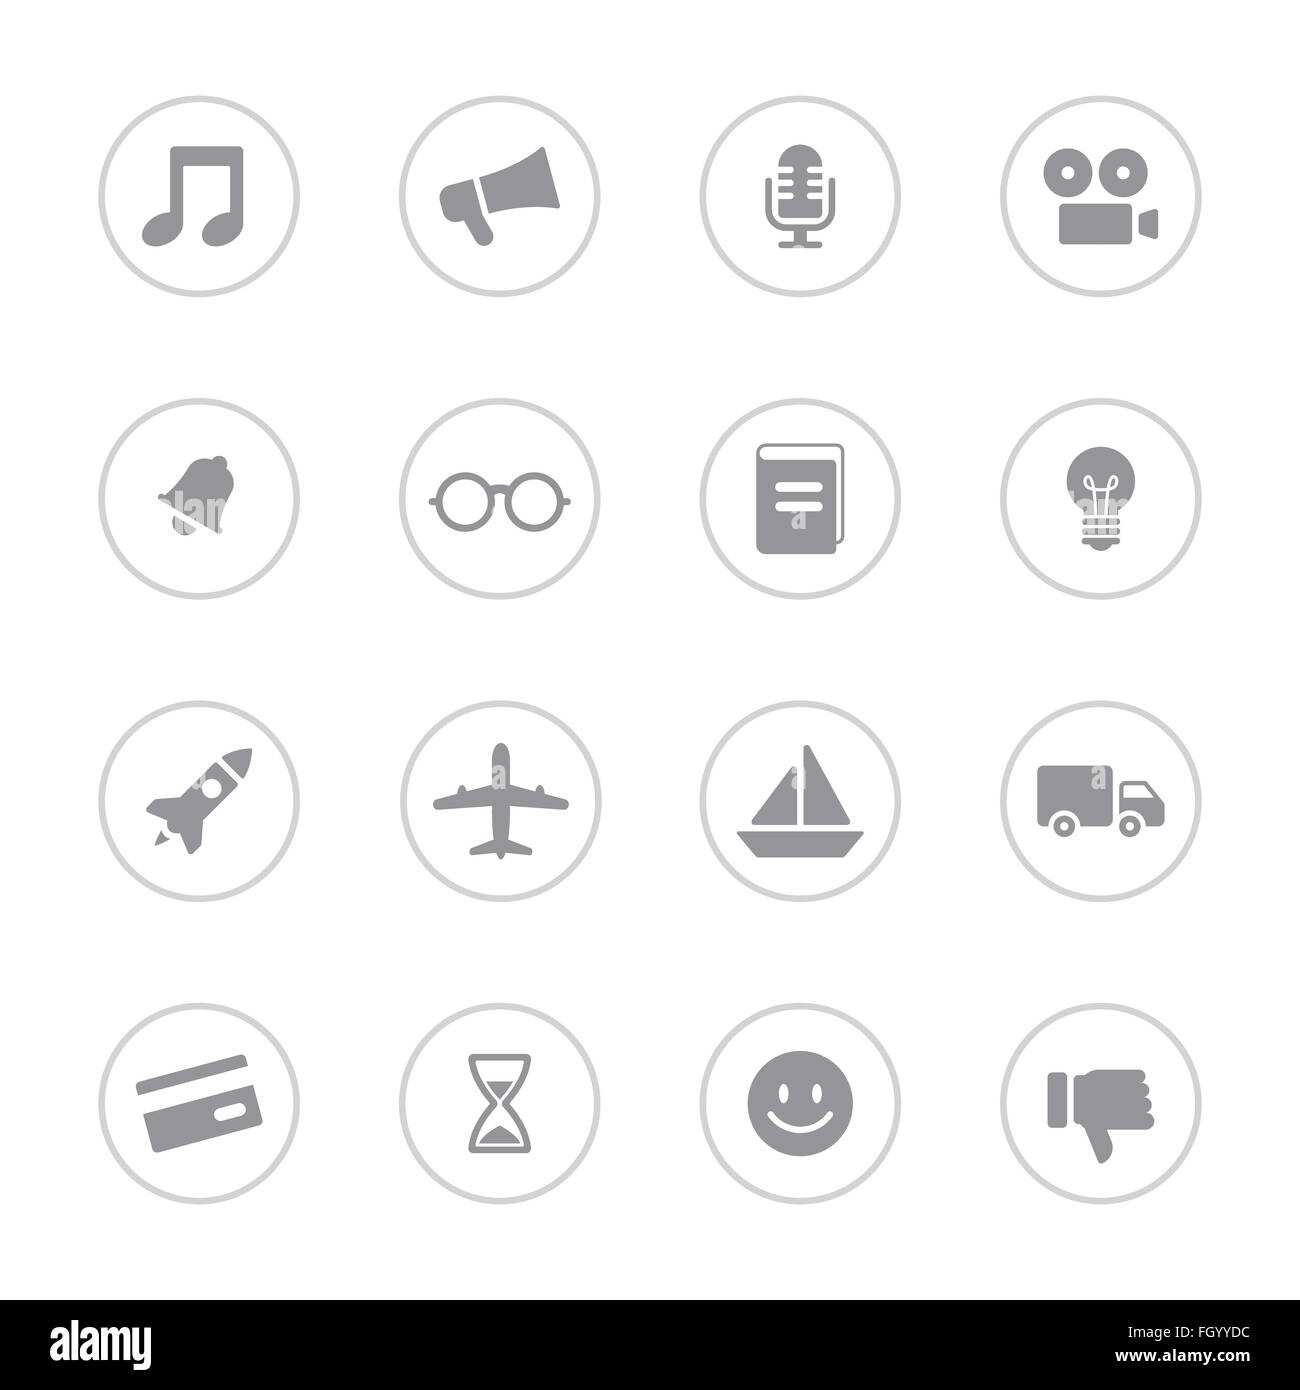 [JPEG] télévision simple gris icon set 5 avec châssis circulaire pour le web design, l'interface utilisateur, l'infographie et de l'application mobile (apps) Banque D'Images